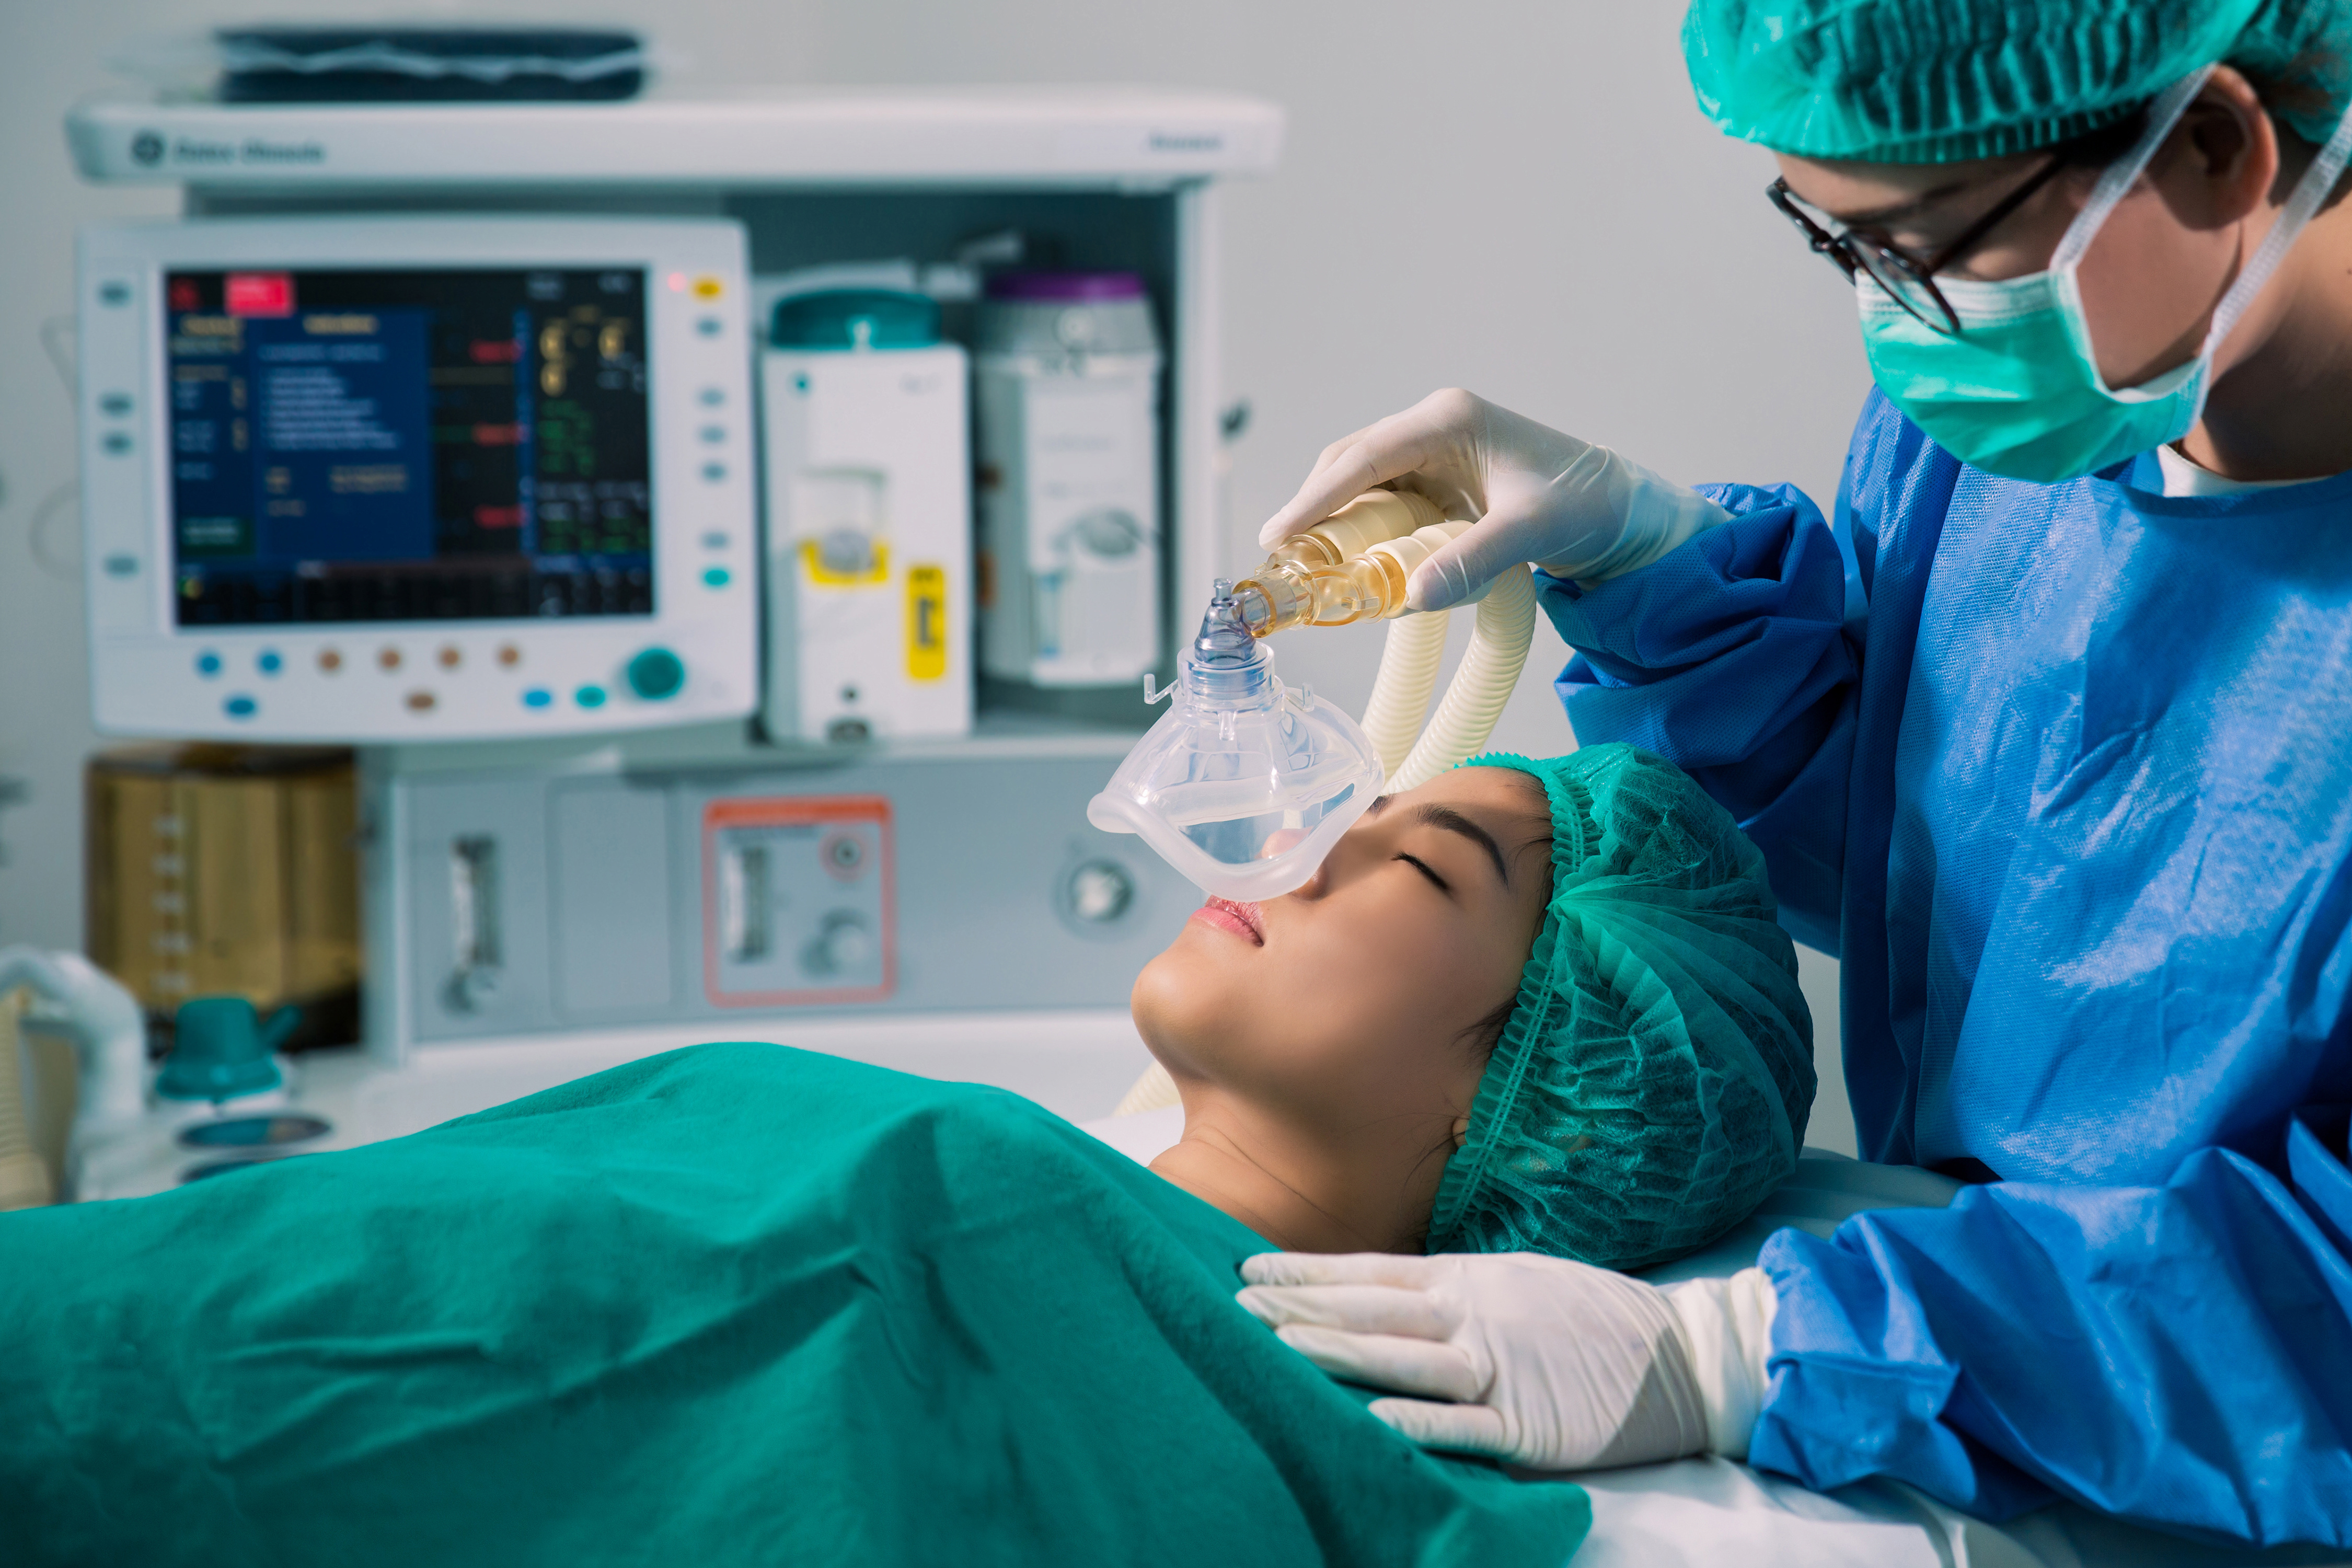 Medizinisches Personal legt ein Beatmungsgerät bei einer liegenden Patientin im Behandlungsraum an